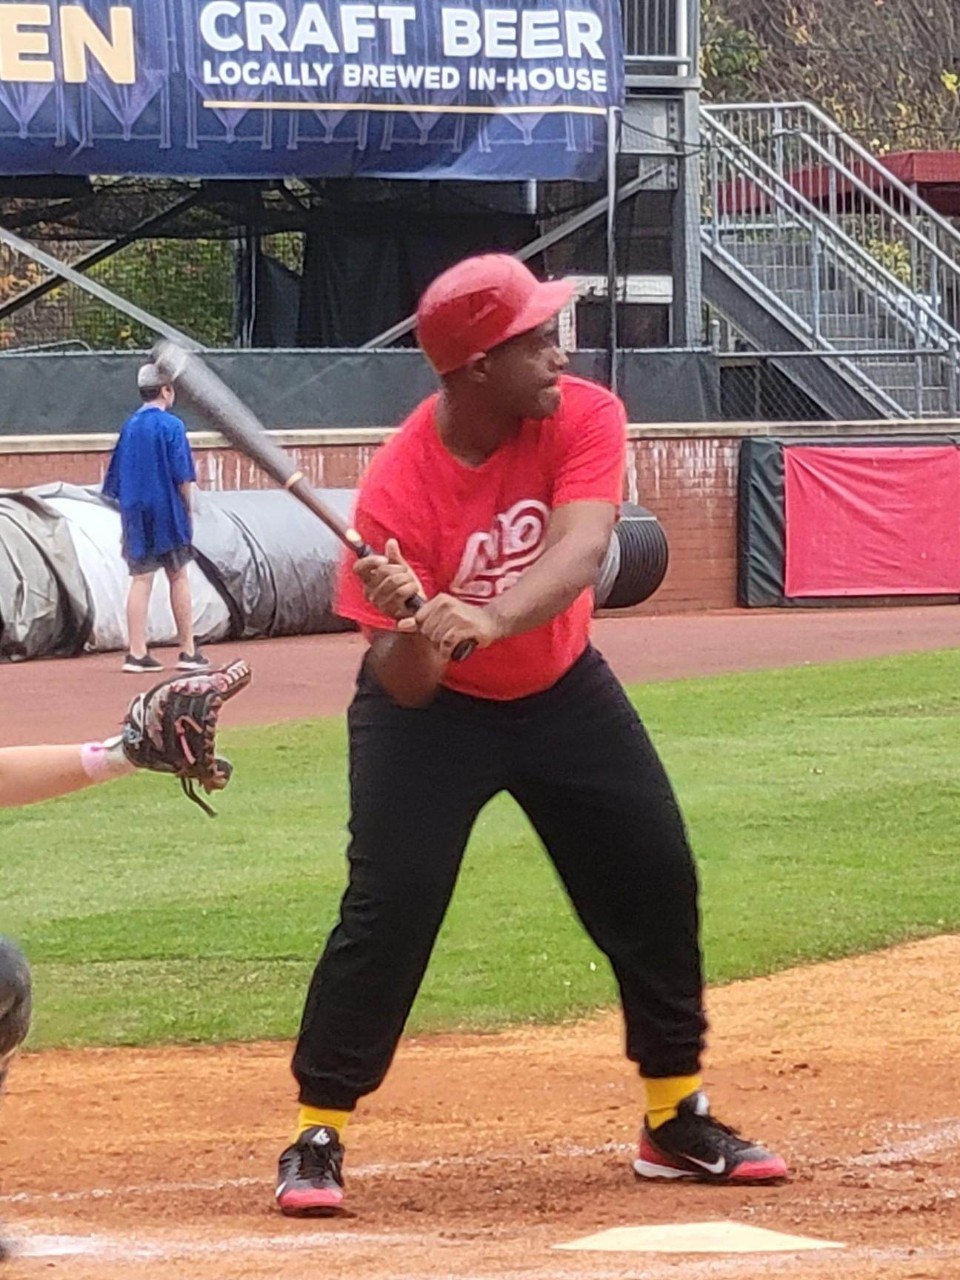 baseball player swinging a bat at home plate